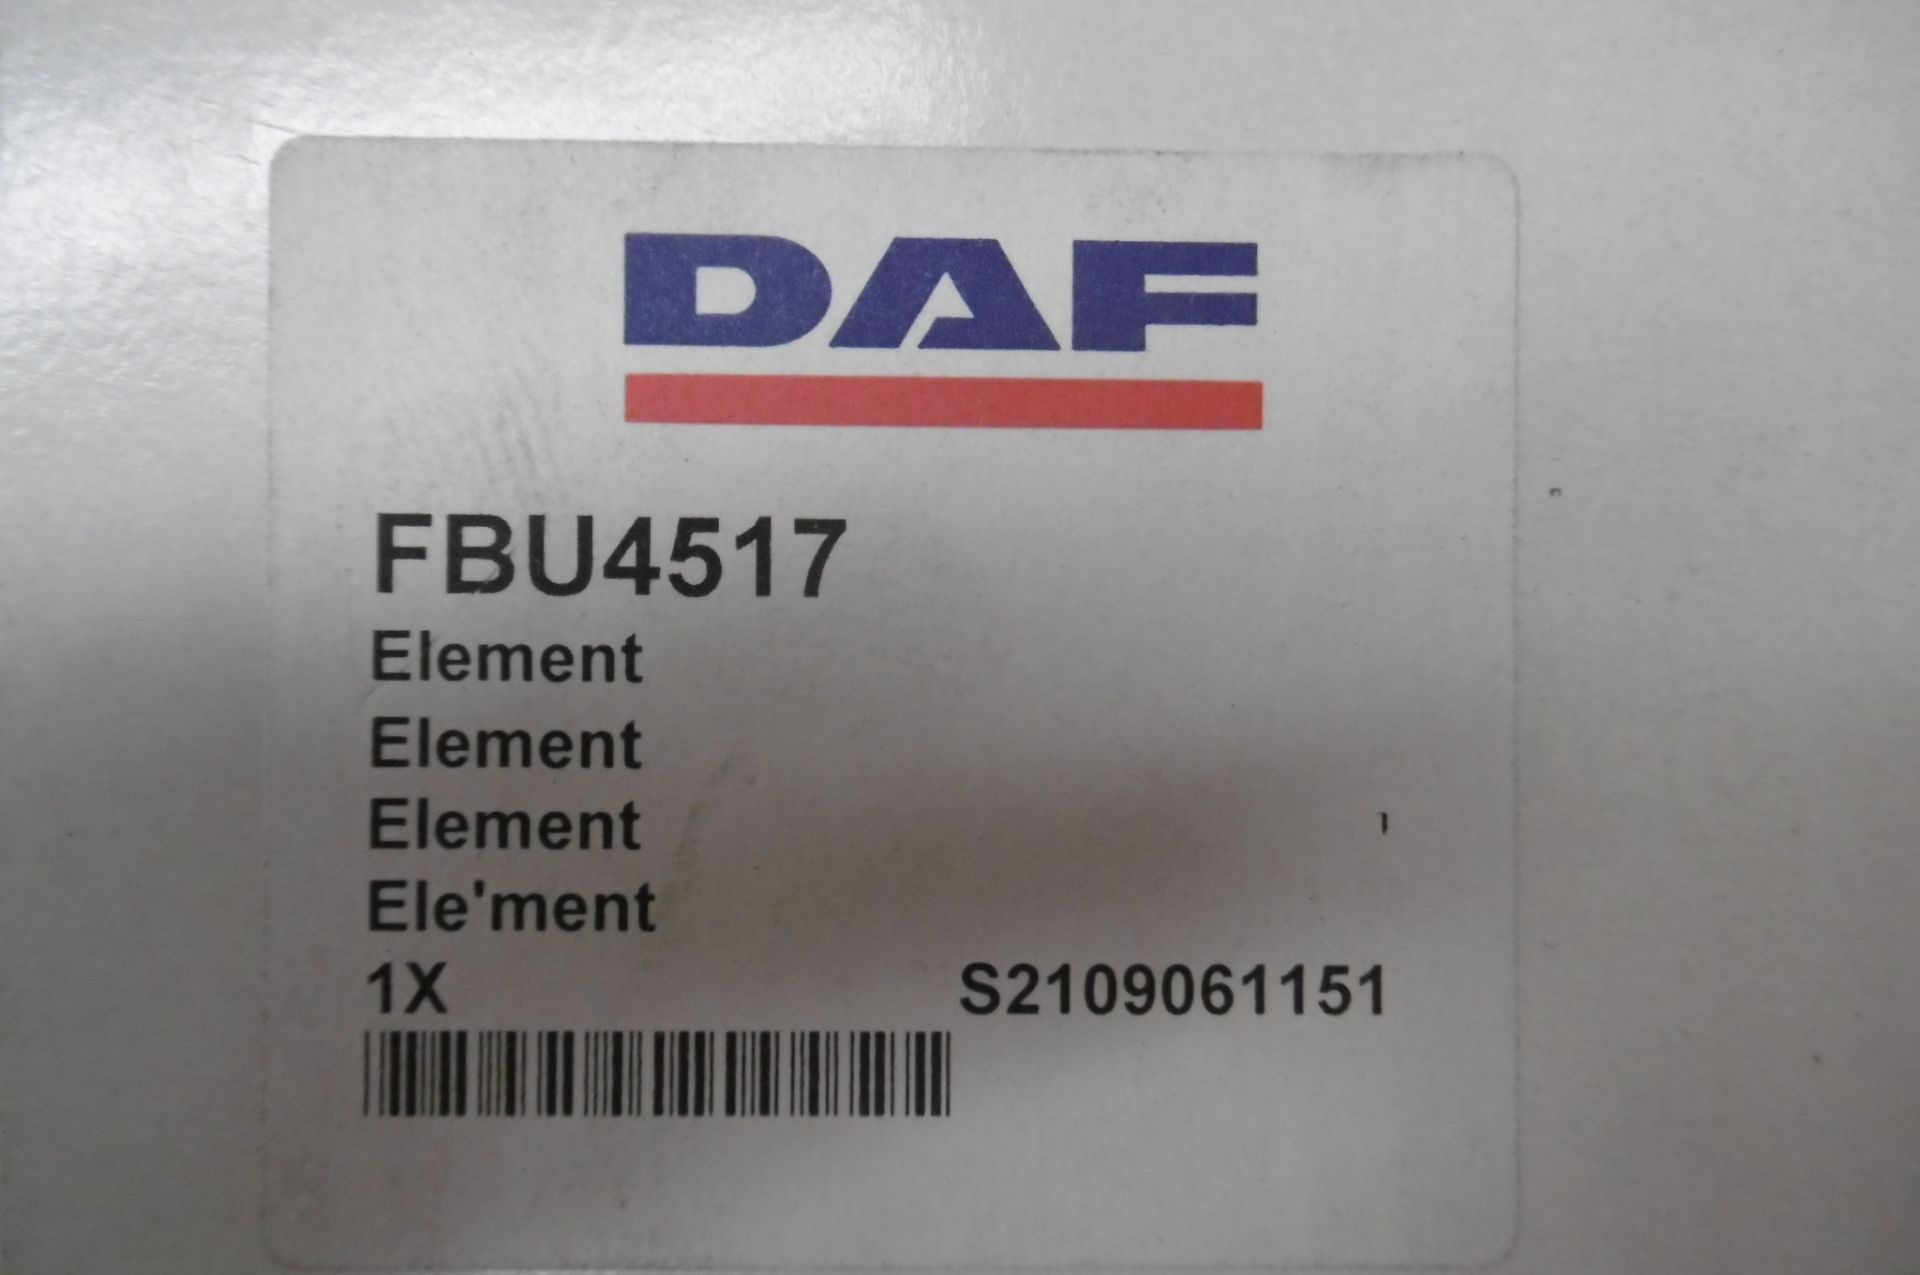 10 x DAF trucks hydraulic fluid filters FBU4517 - Image 3 of 3